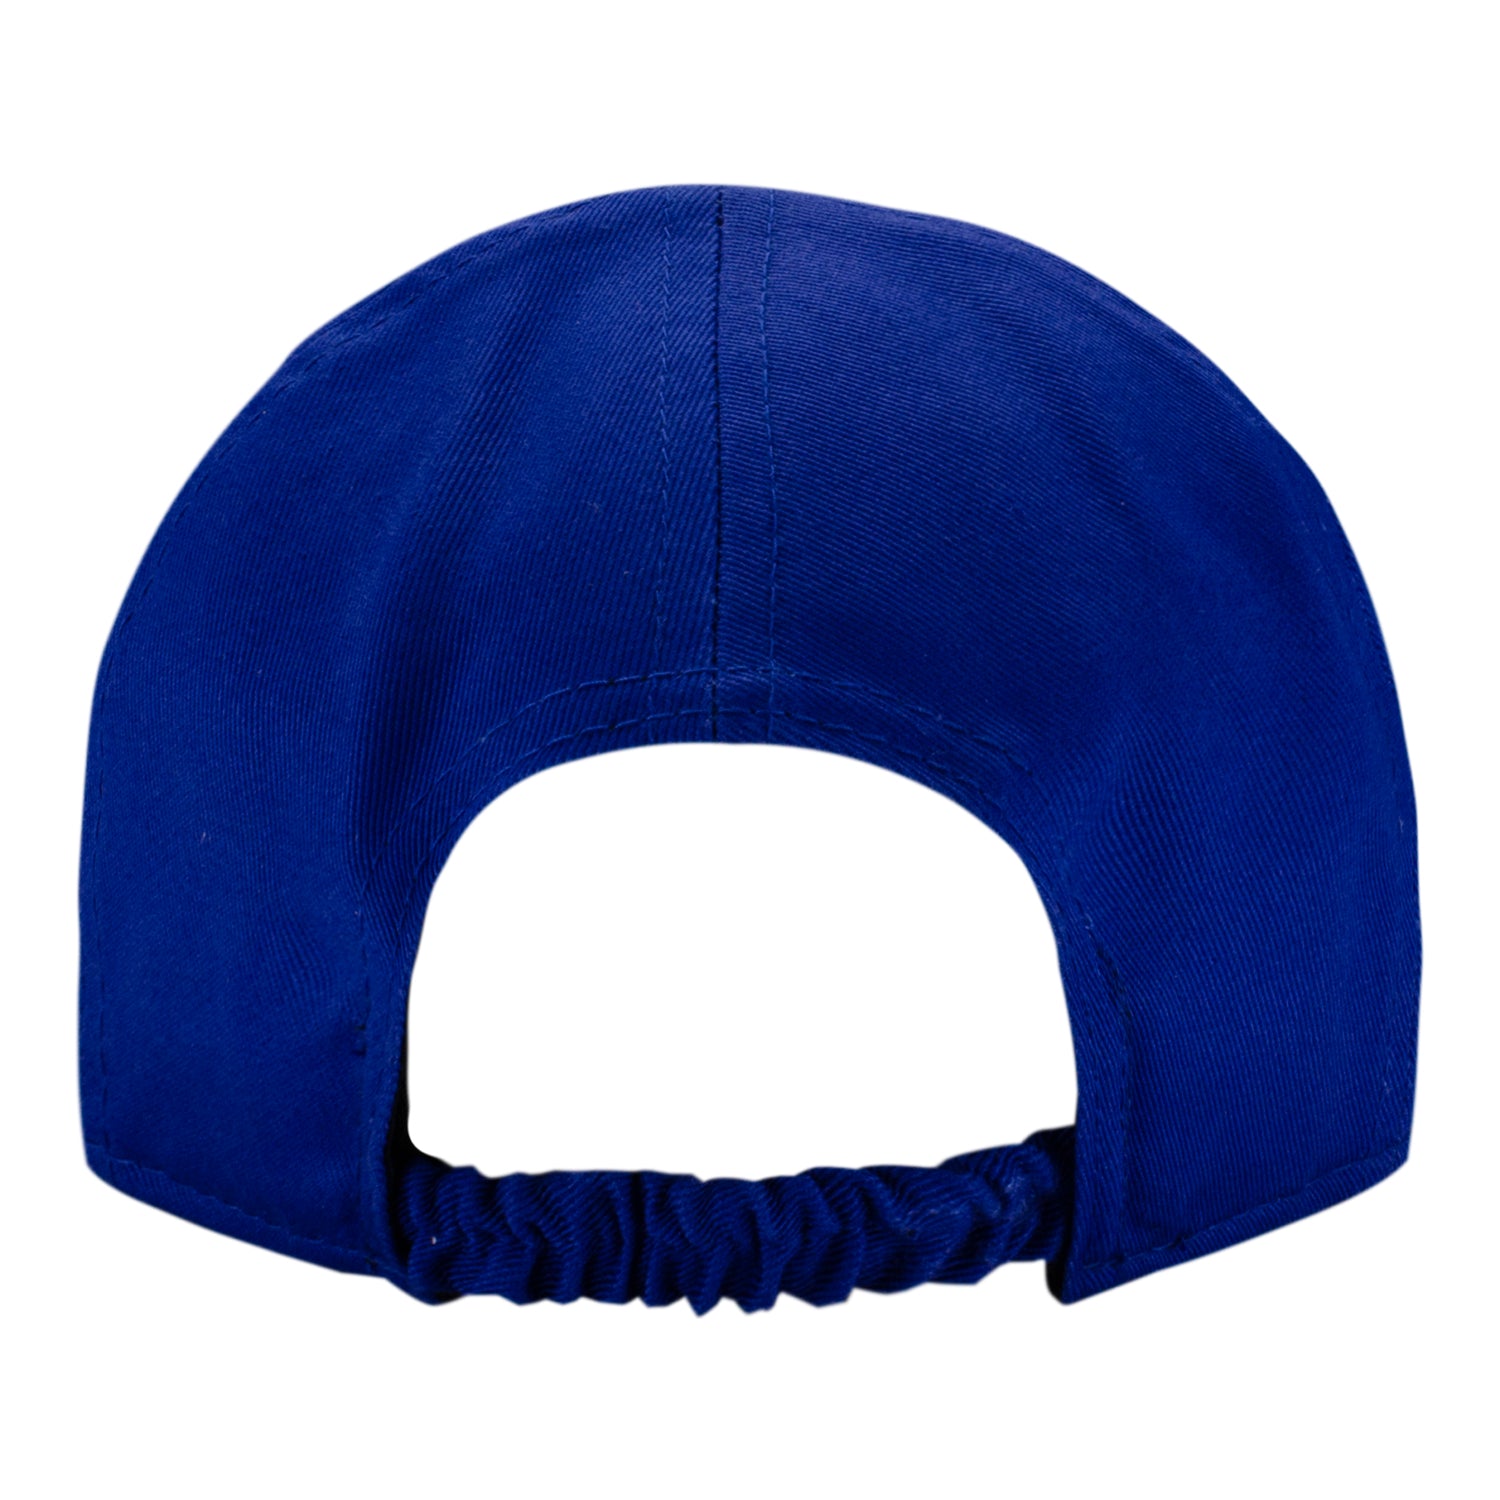 Infant New Era Knicks My 1st 920 Adjustable Hat In Blue & Orange - Back View